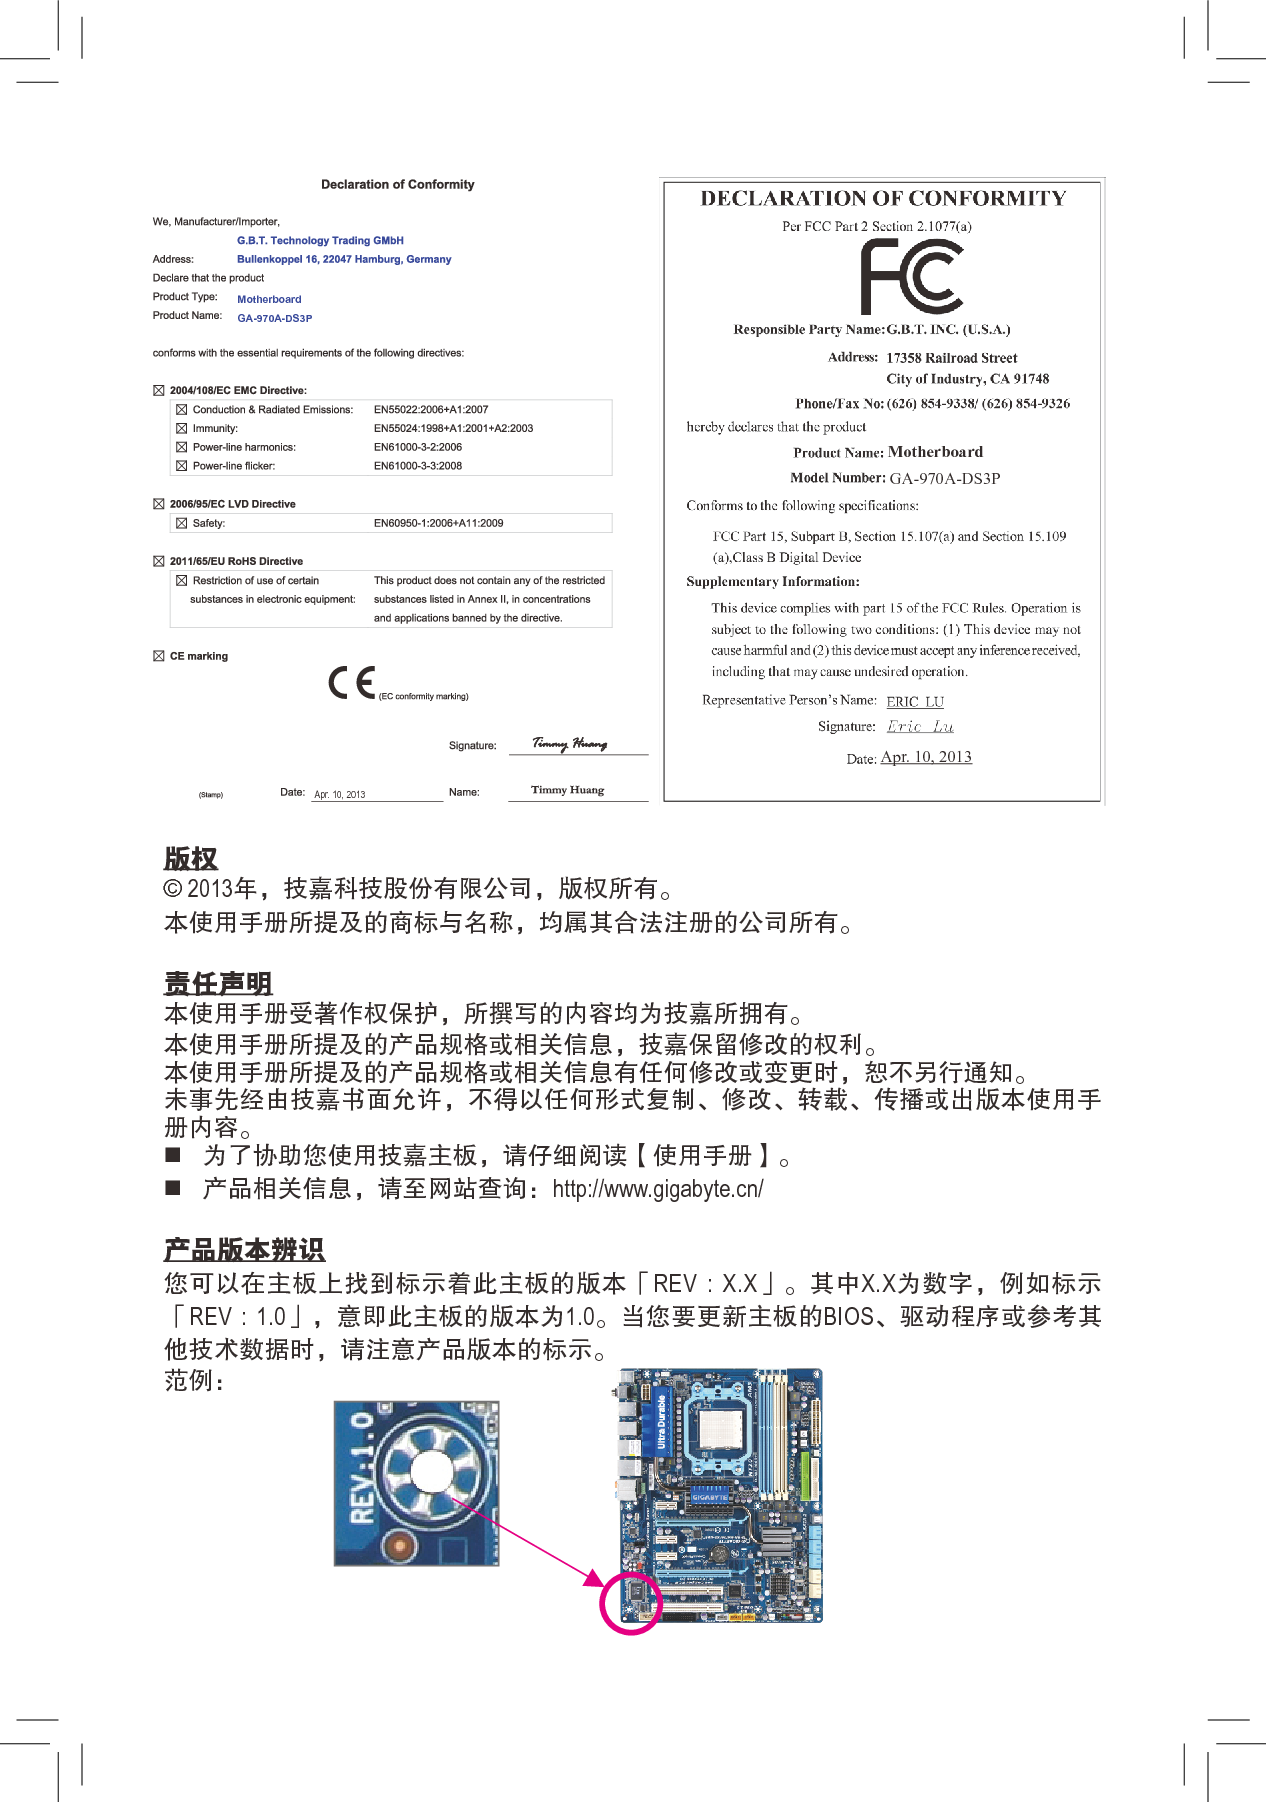 技嘉 Gigabyte GA-970A-DS3P 1001版 使用手册 第1页